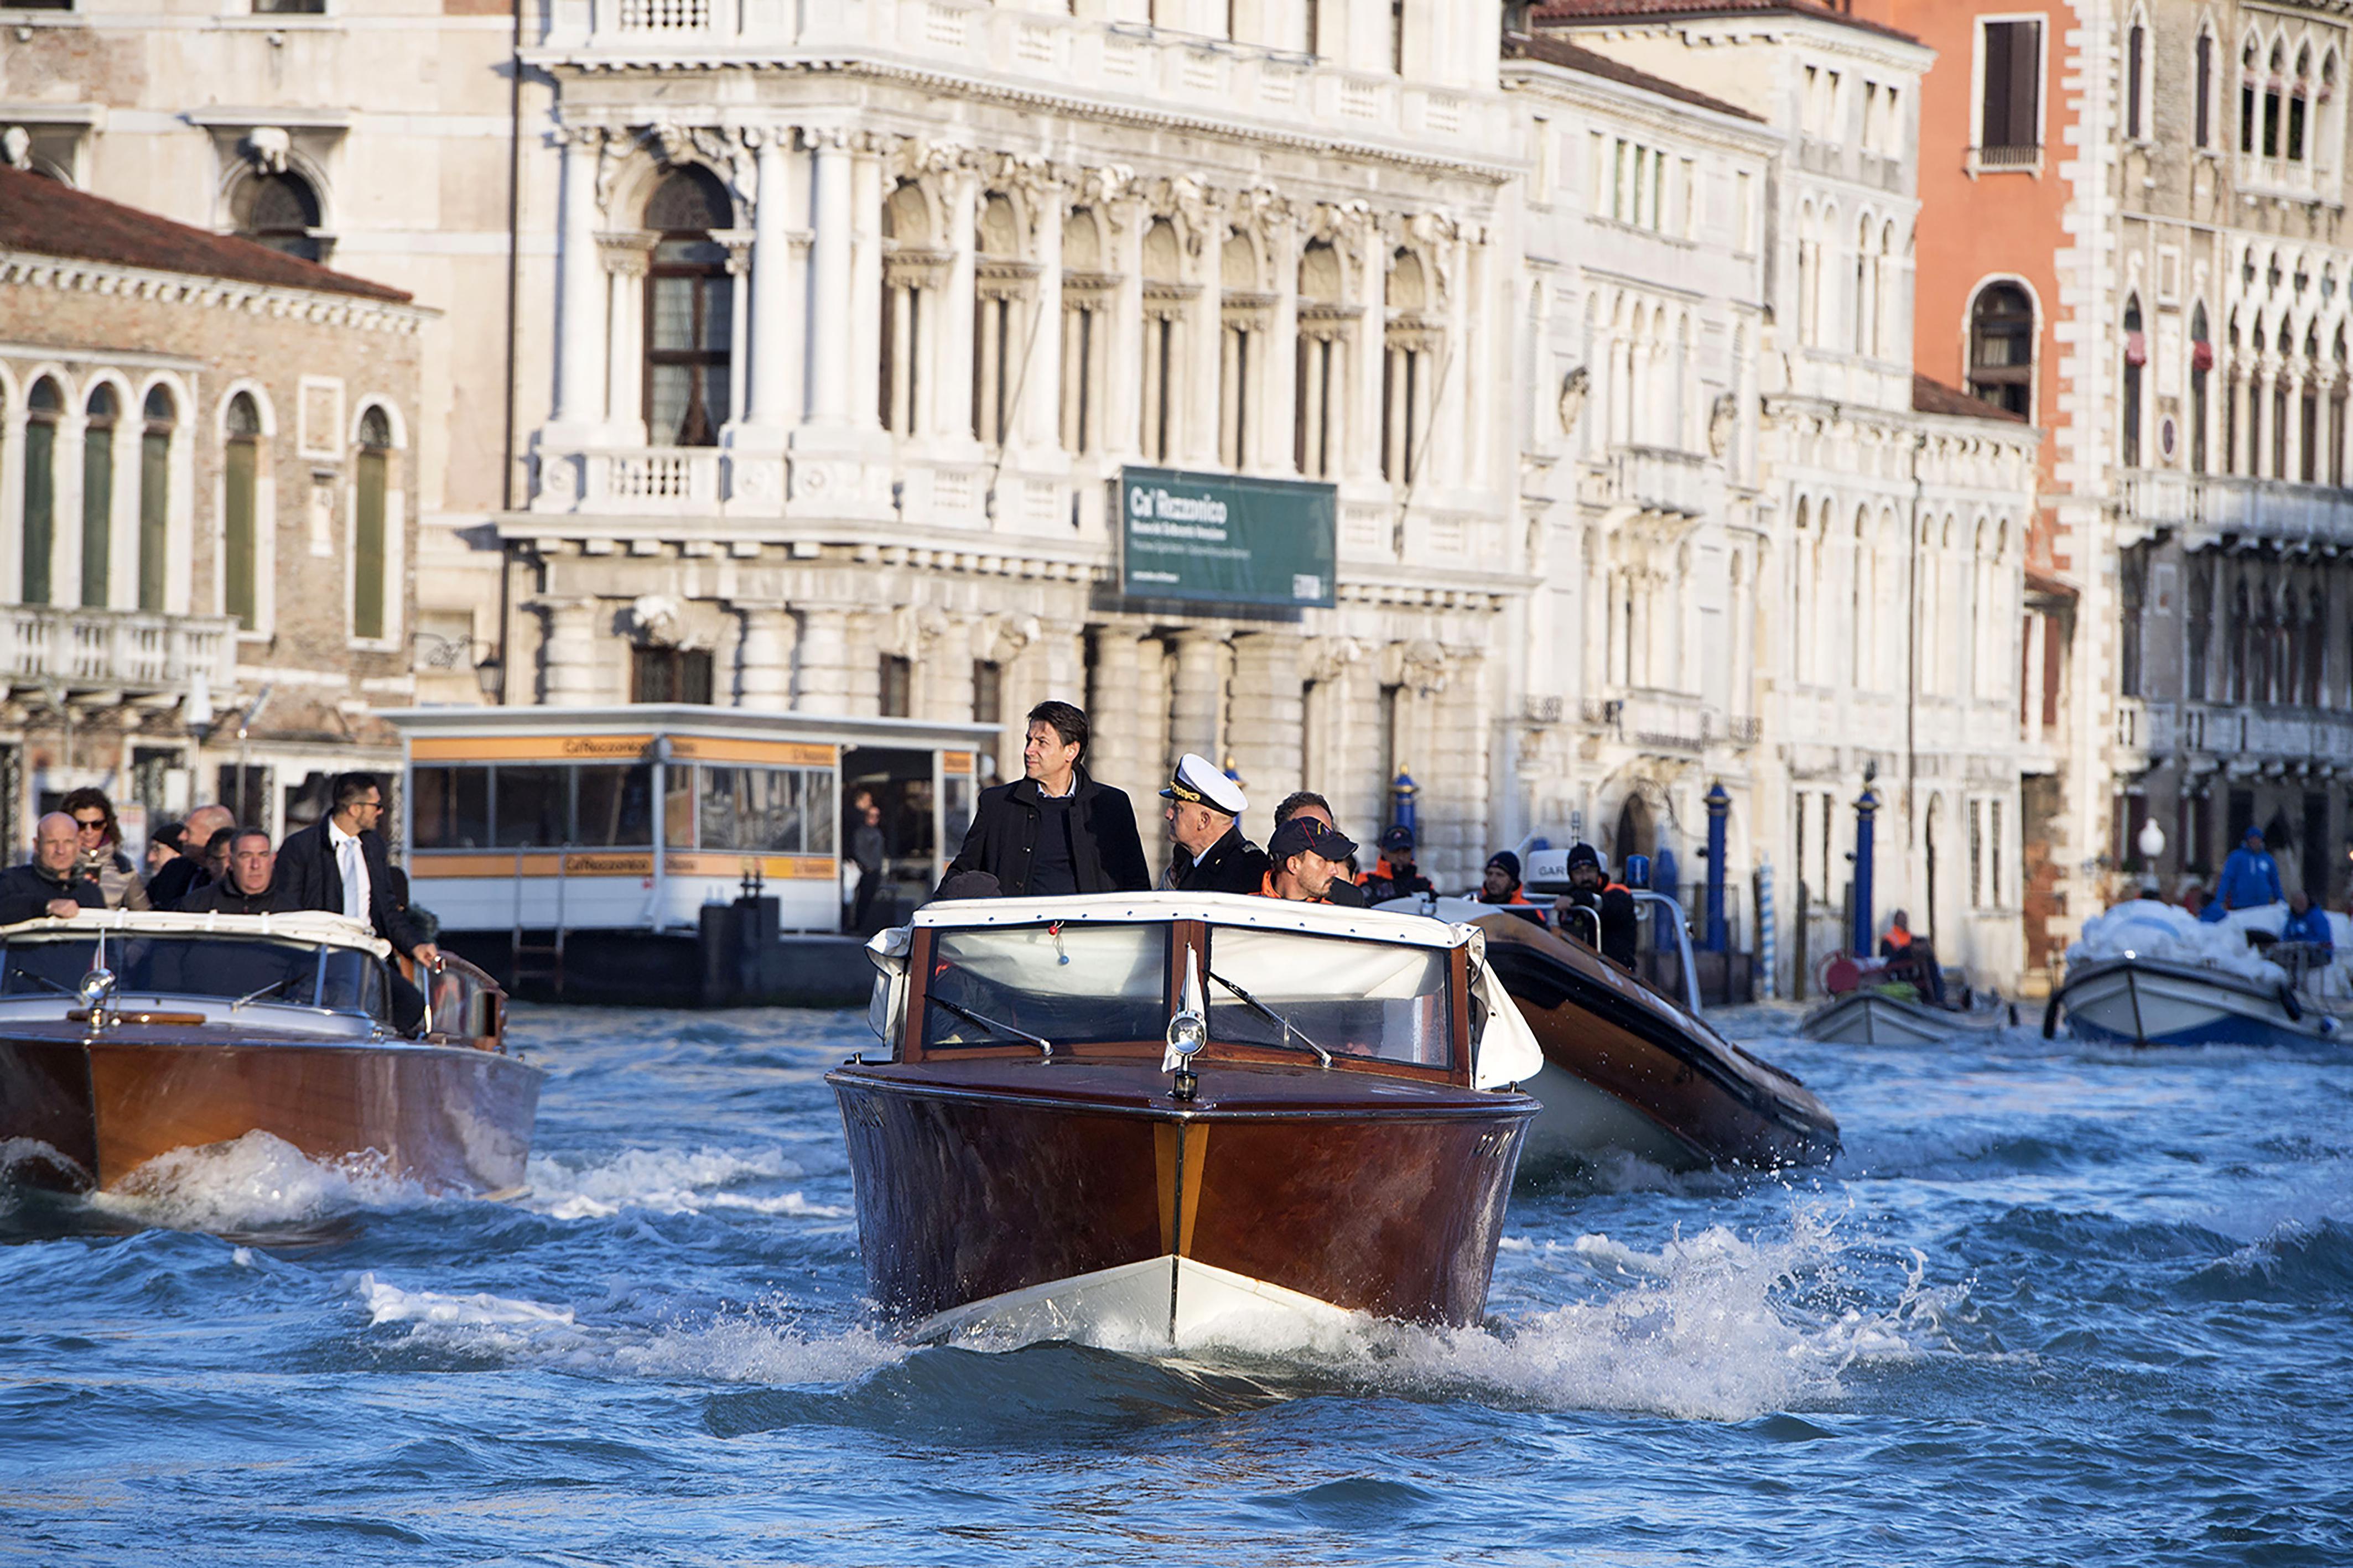 Venedikte su seviyesi 1,5 metreye kadar yükseldi